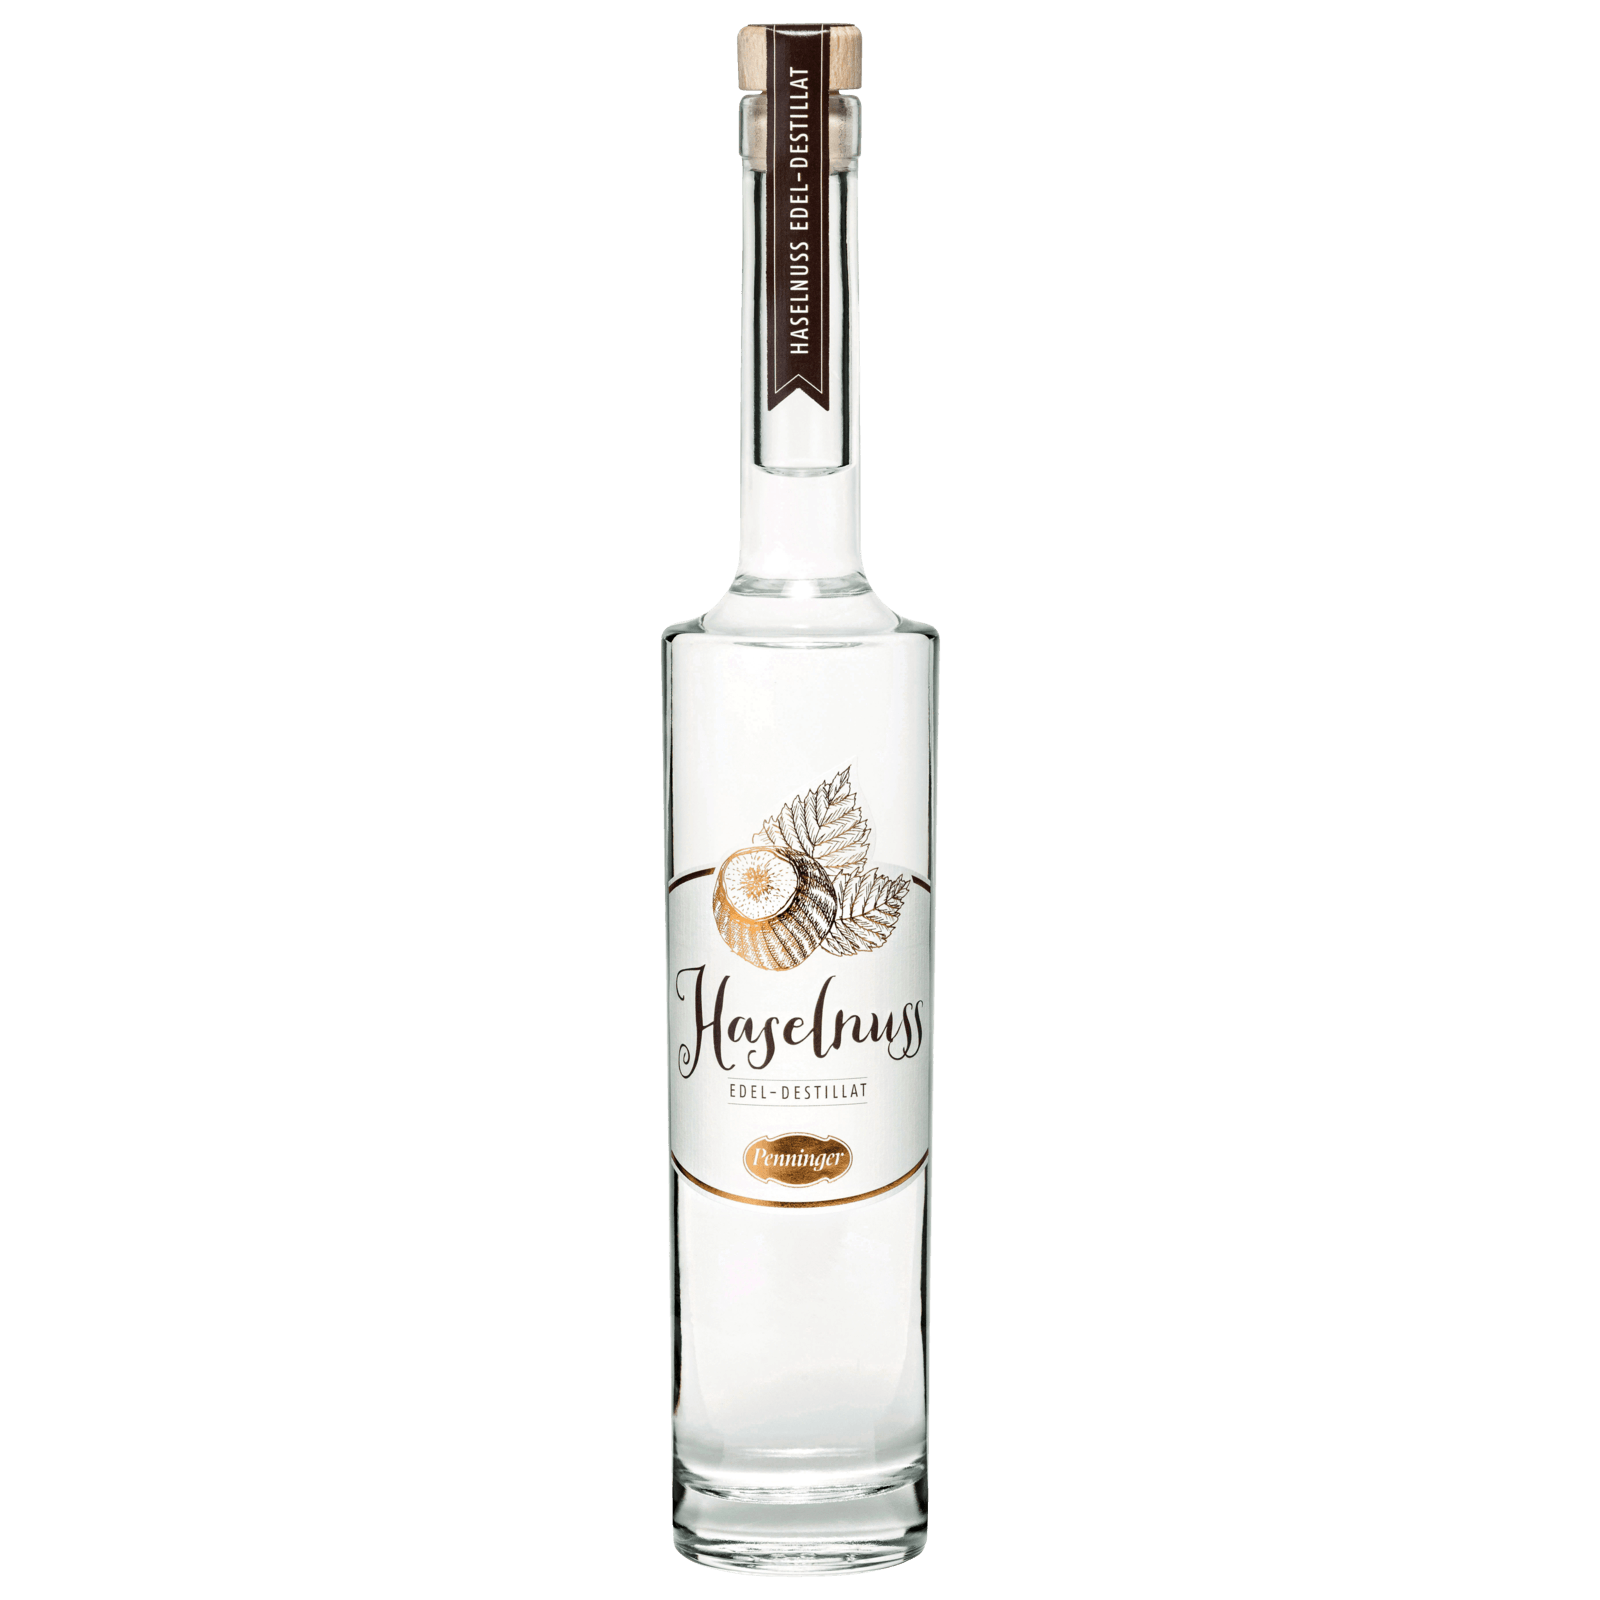 Vodka & Caramel 18vol.% 0,7l - Heiko Blume Shop